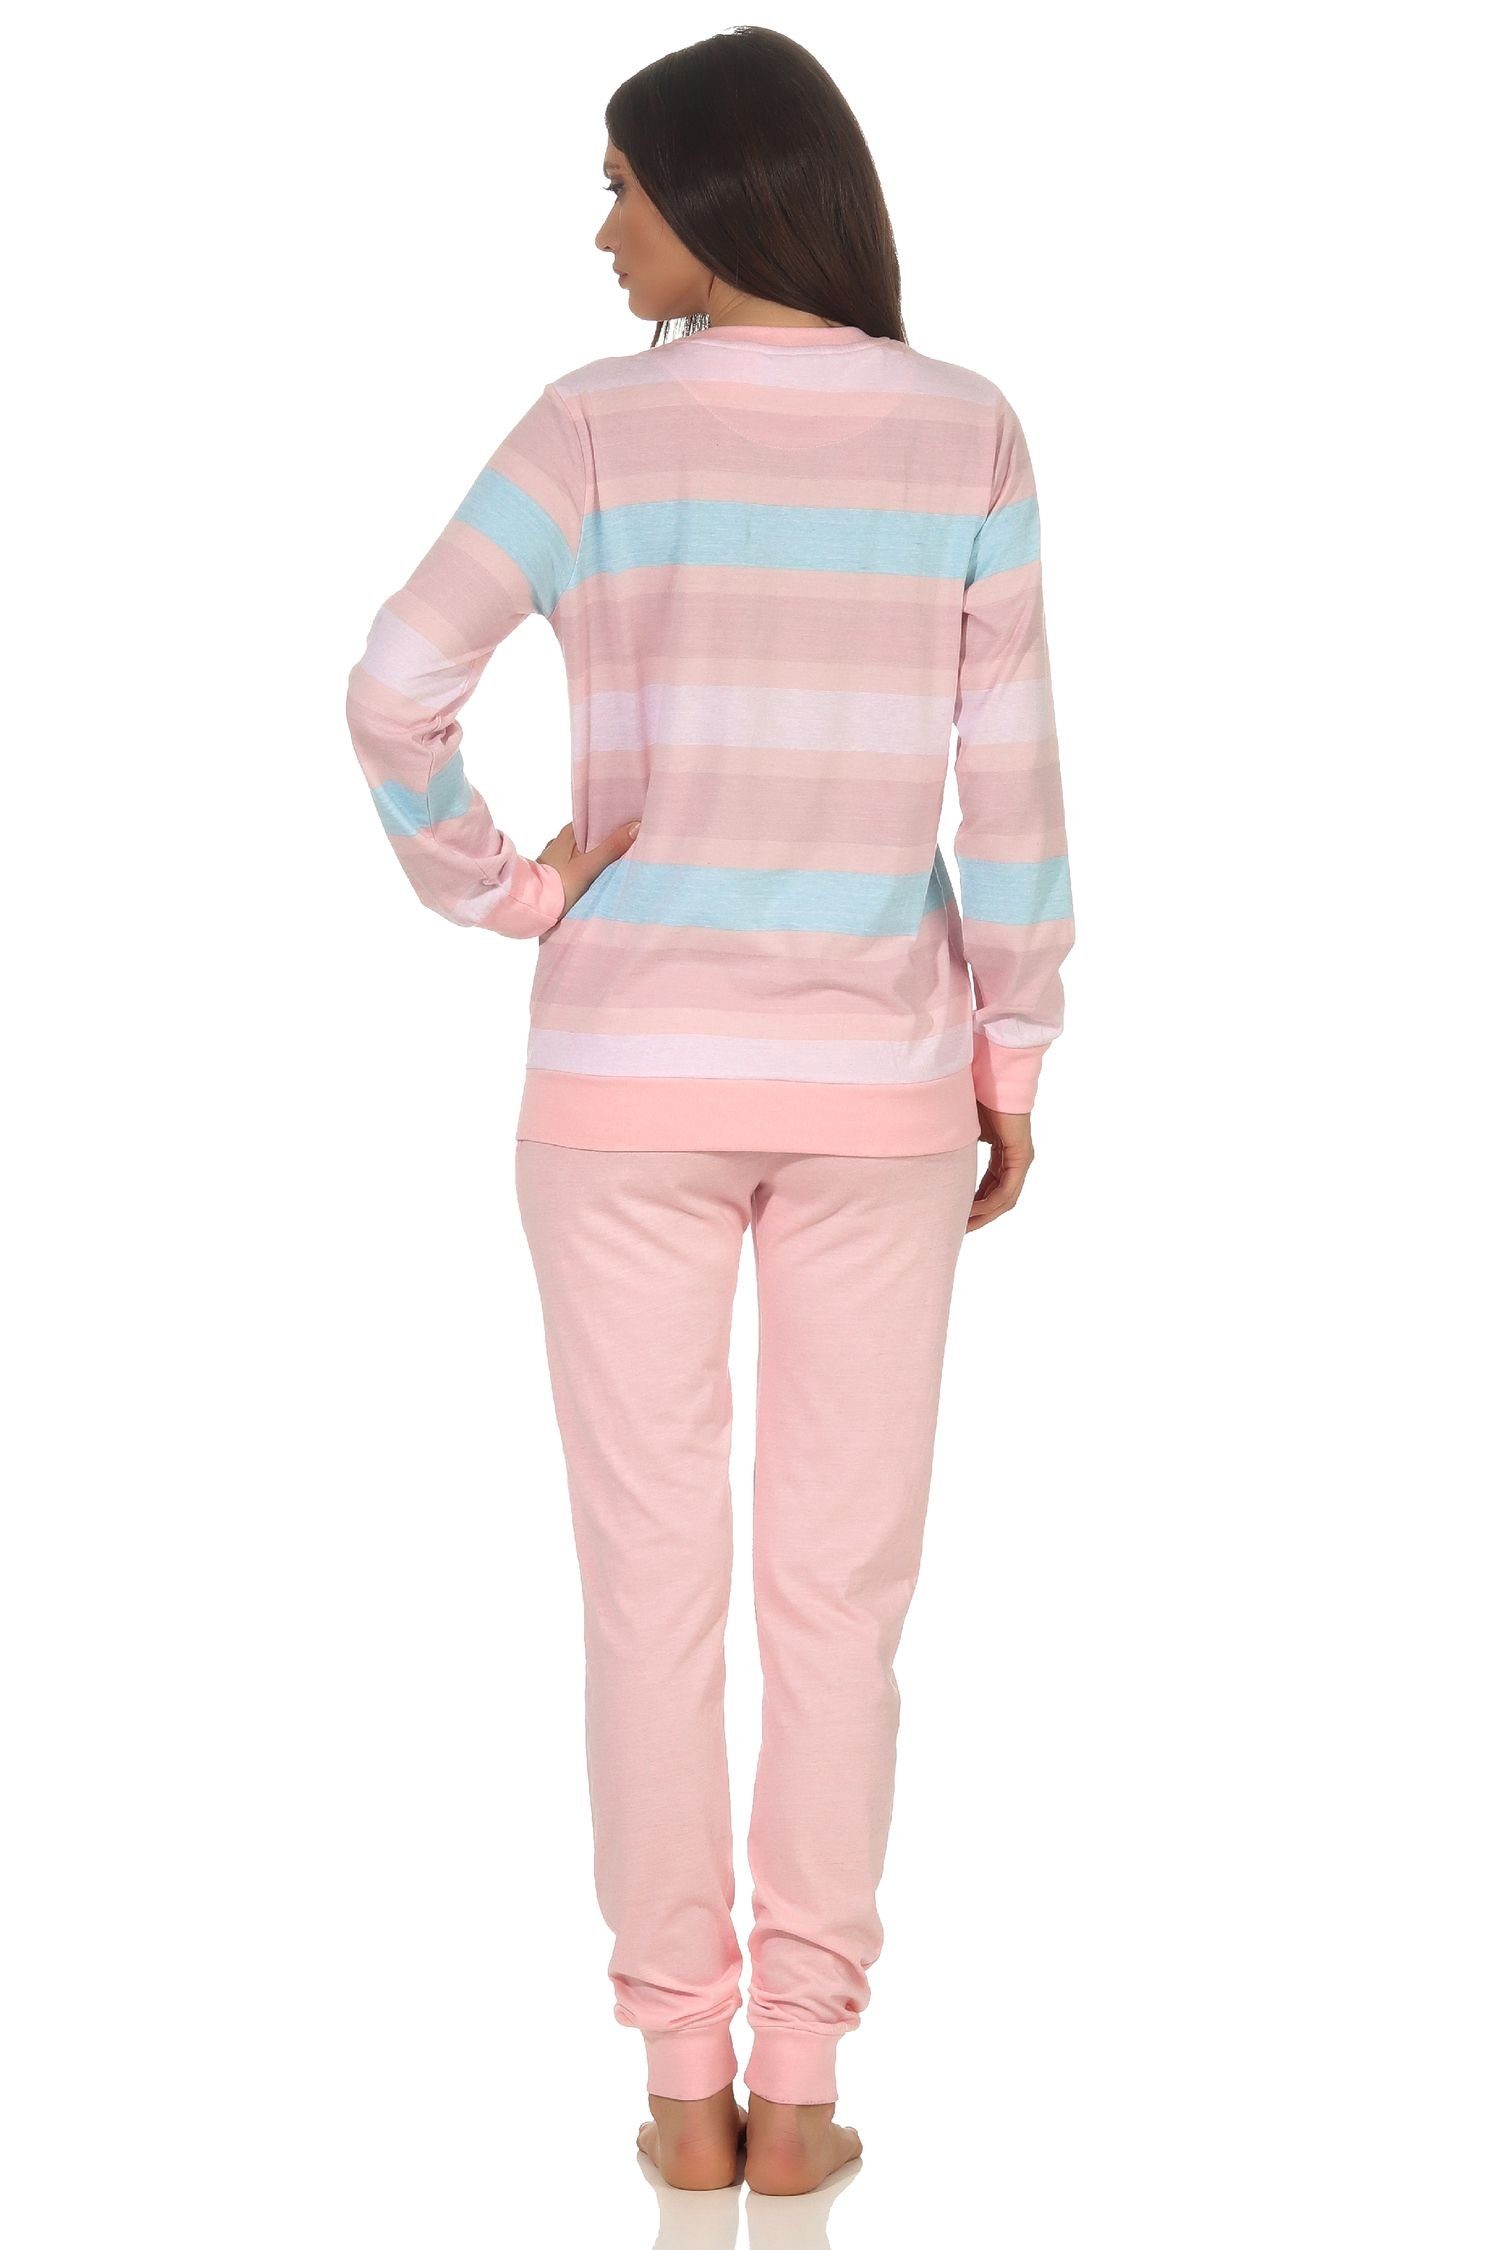 langarm und rosa Schlafanzug Damen gestreiften Top Bündchen Pyjama Pyjama Normann mit